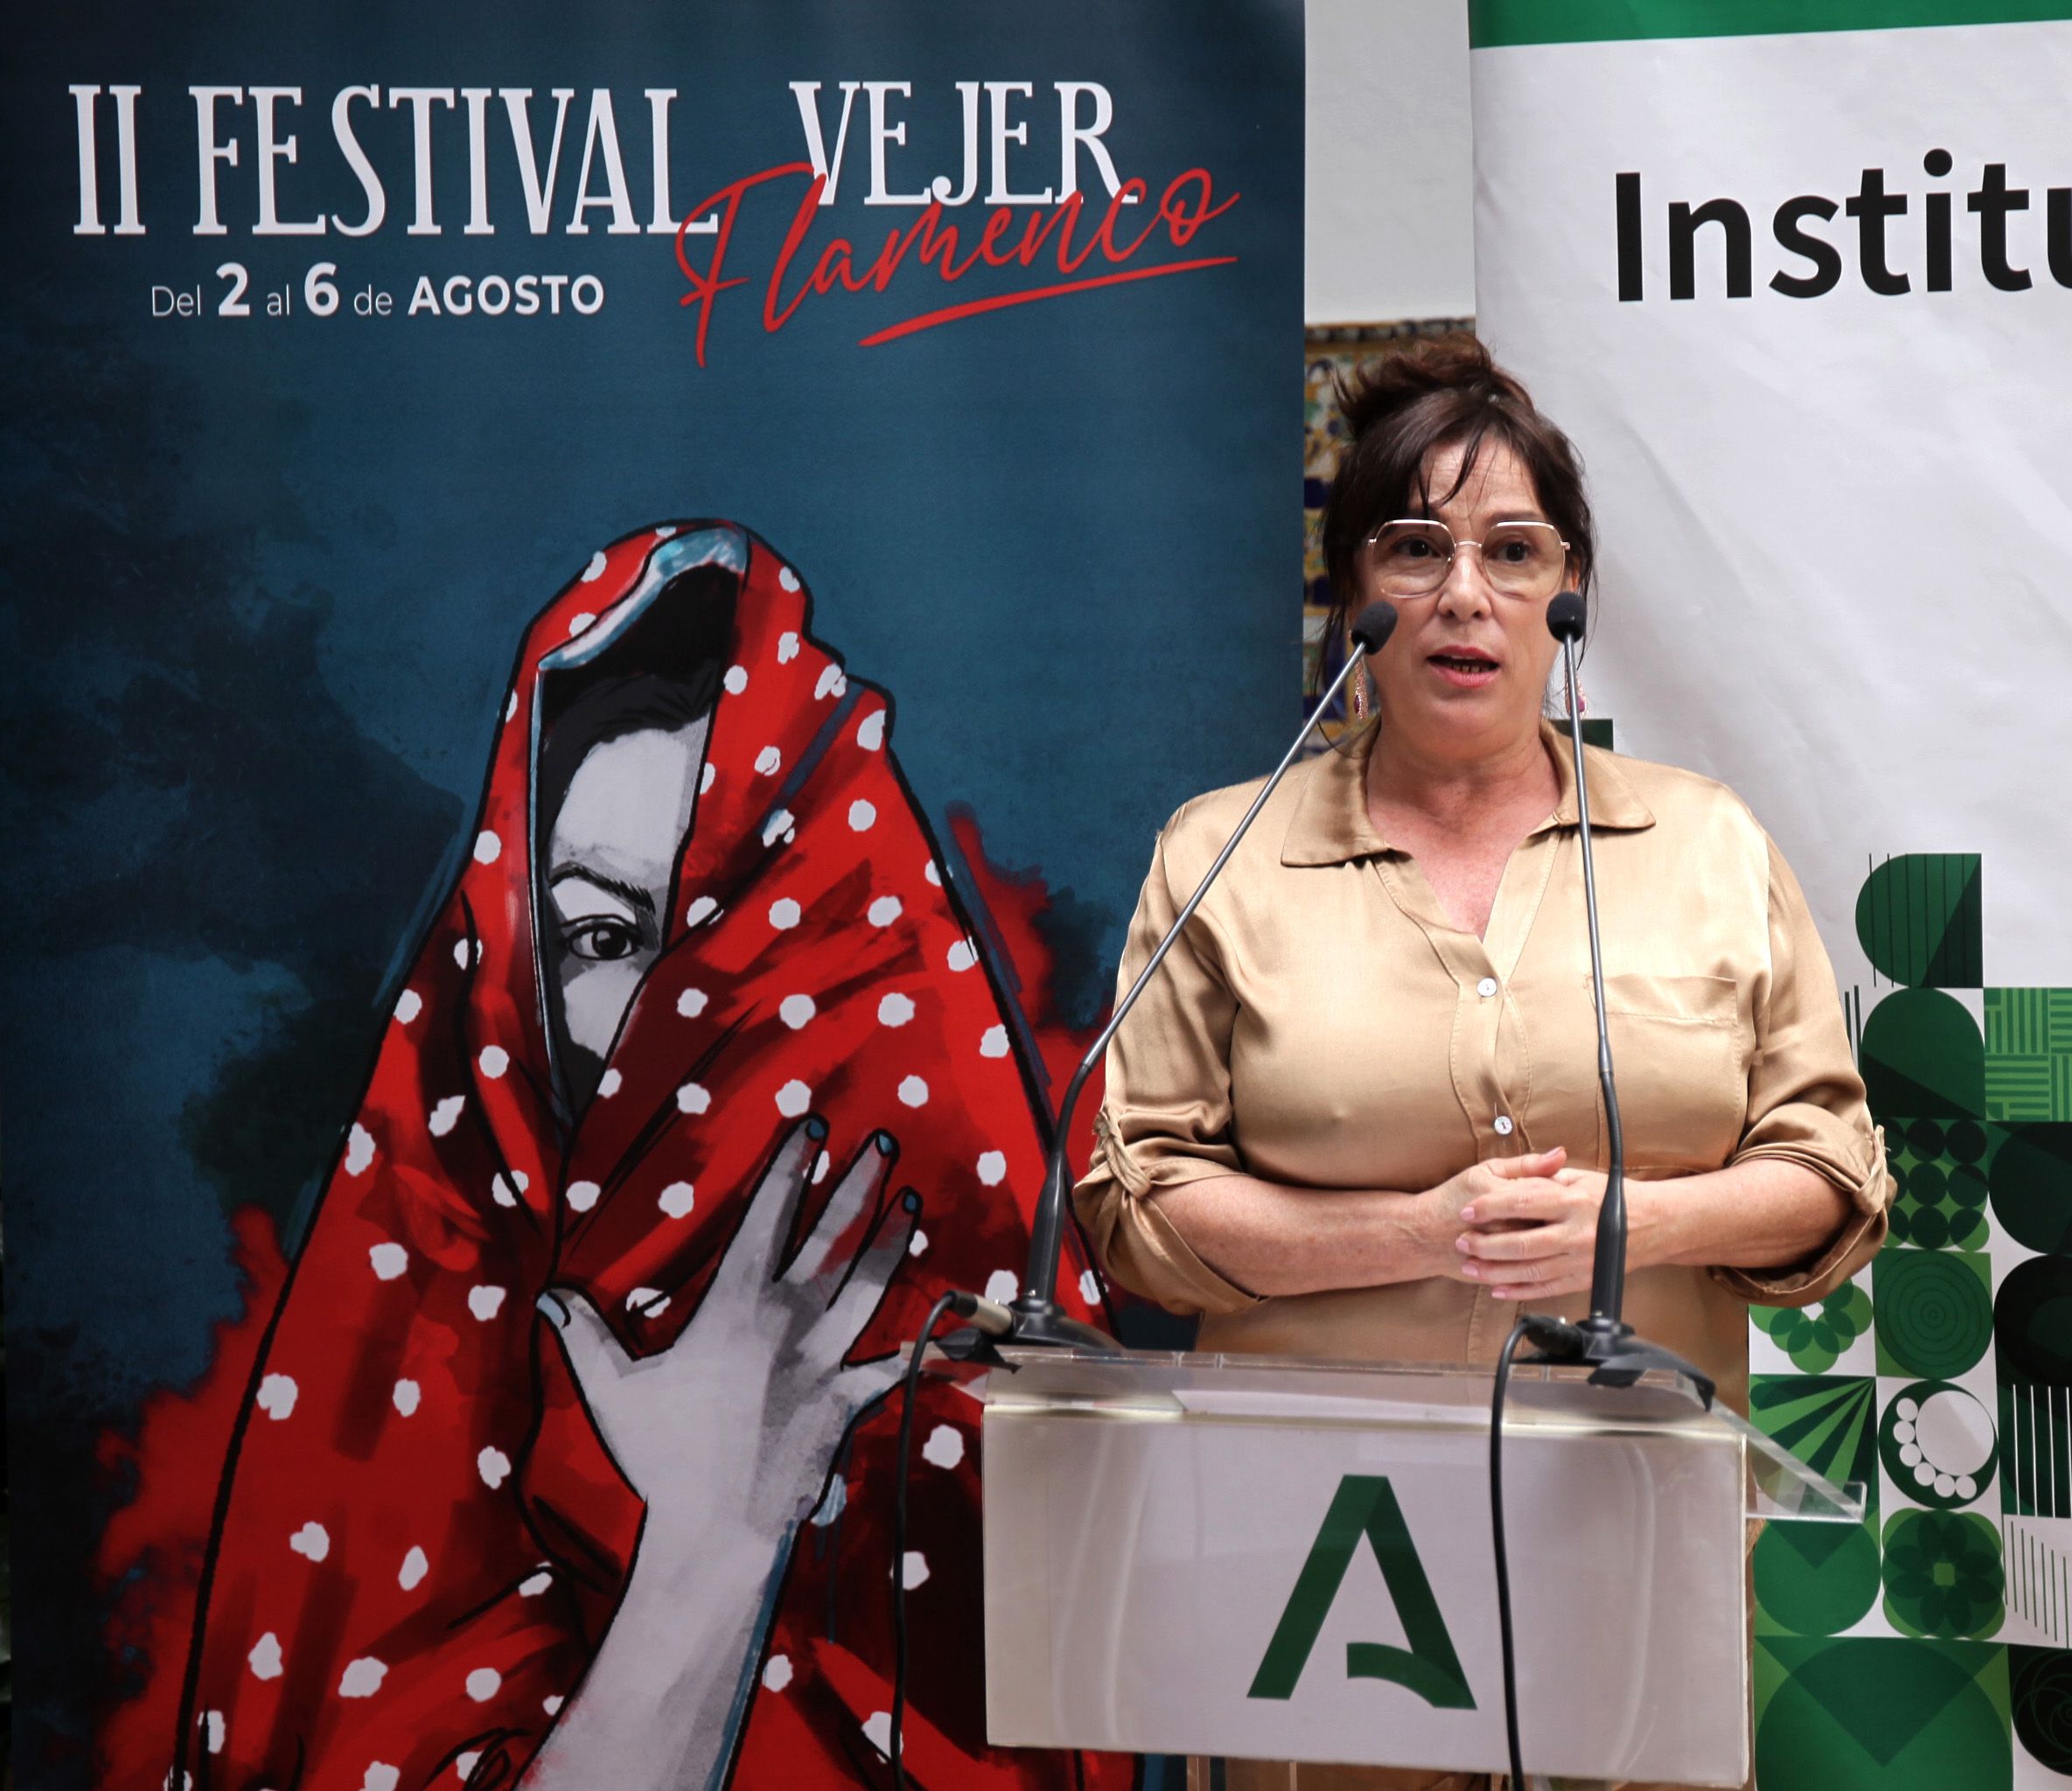 Vejer se prepara para la segunda edición de su festival flamenco: "un evento vivo, abierto y participativo"